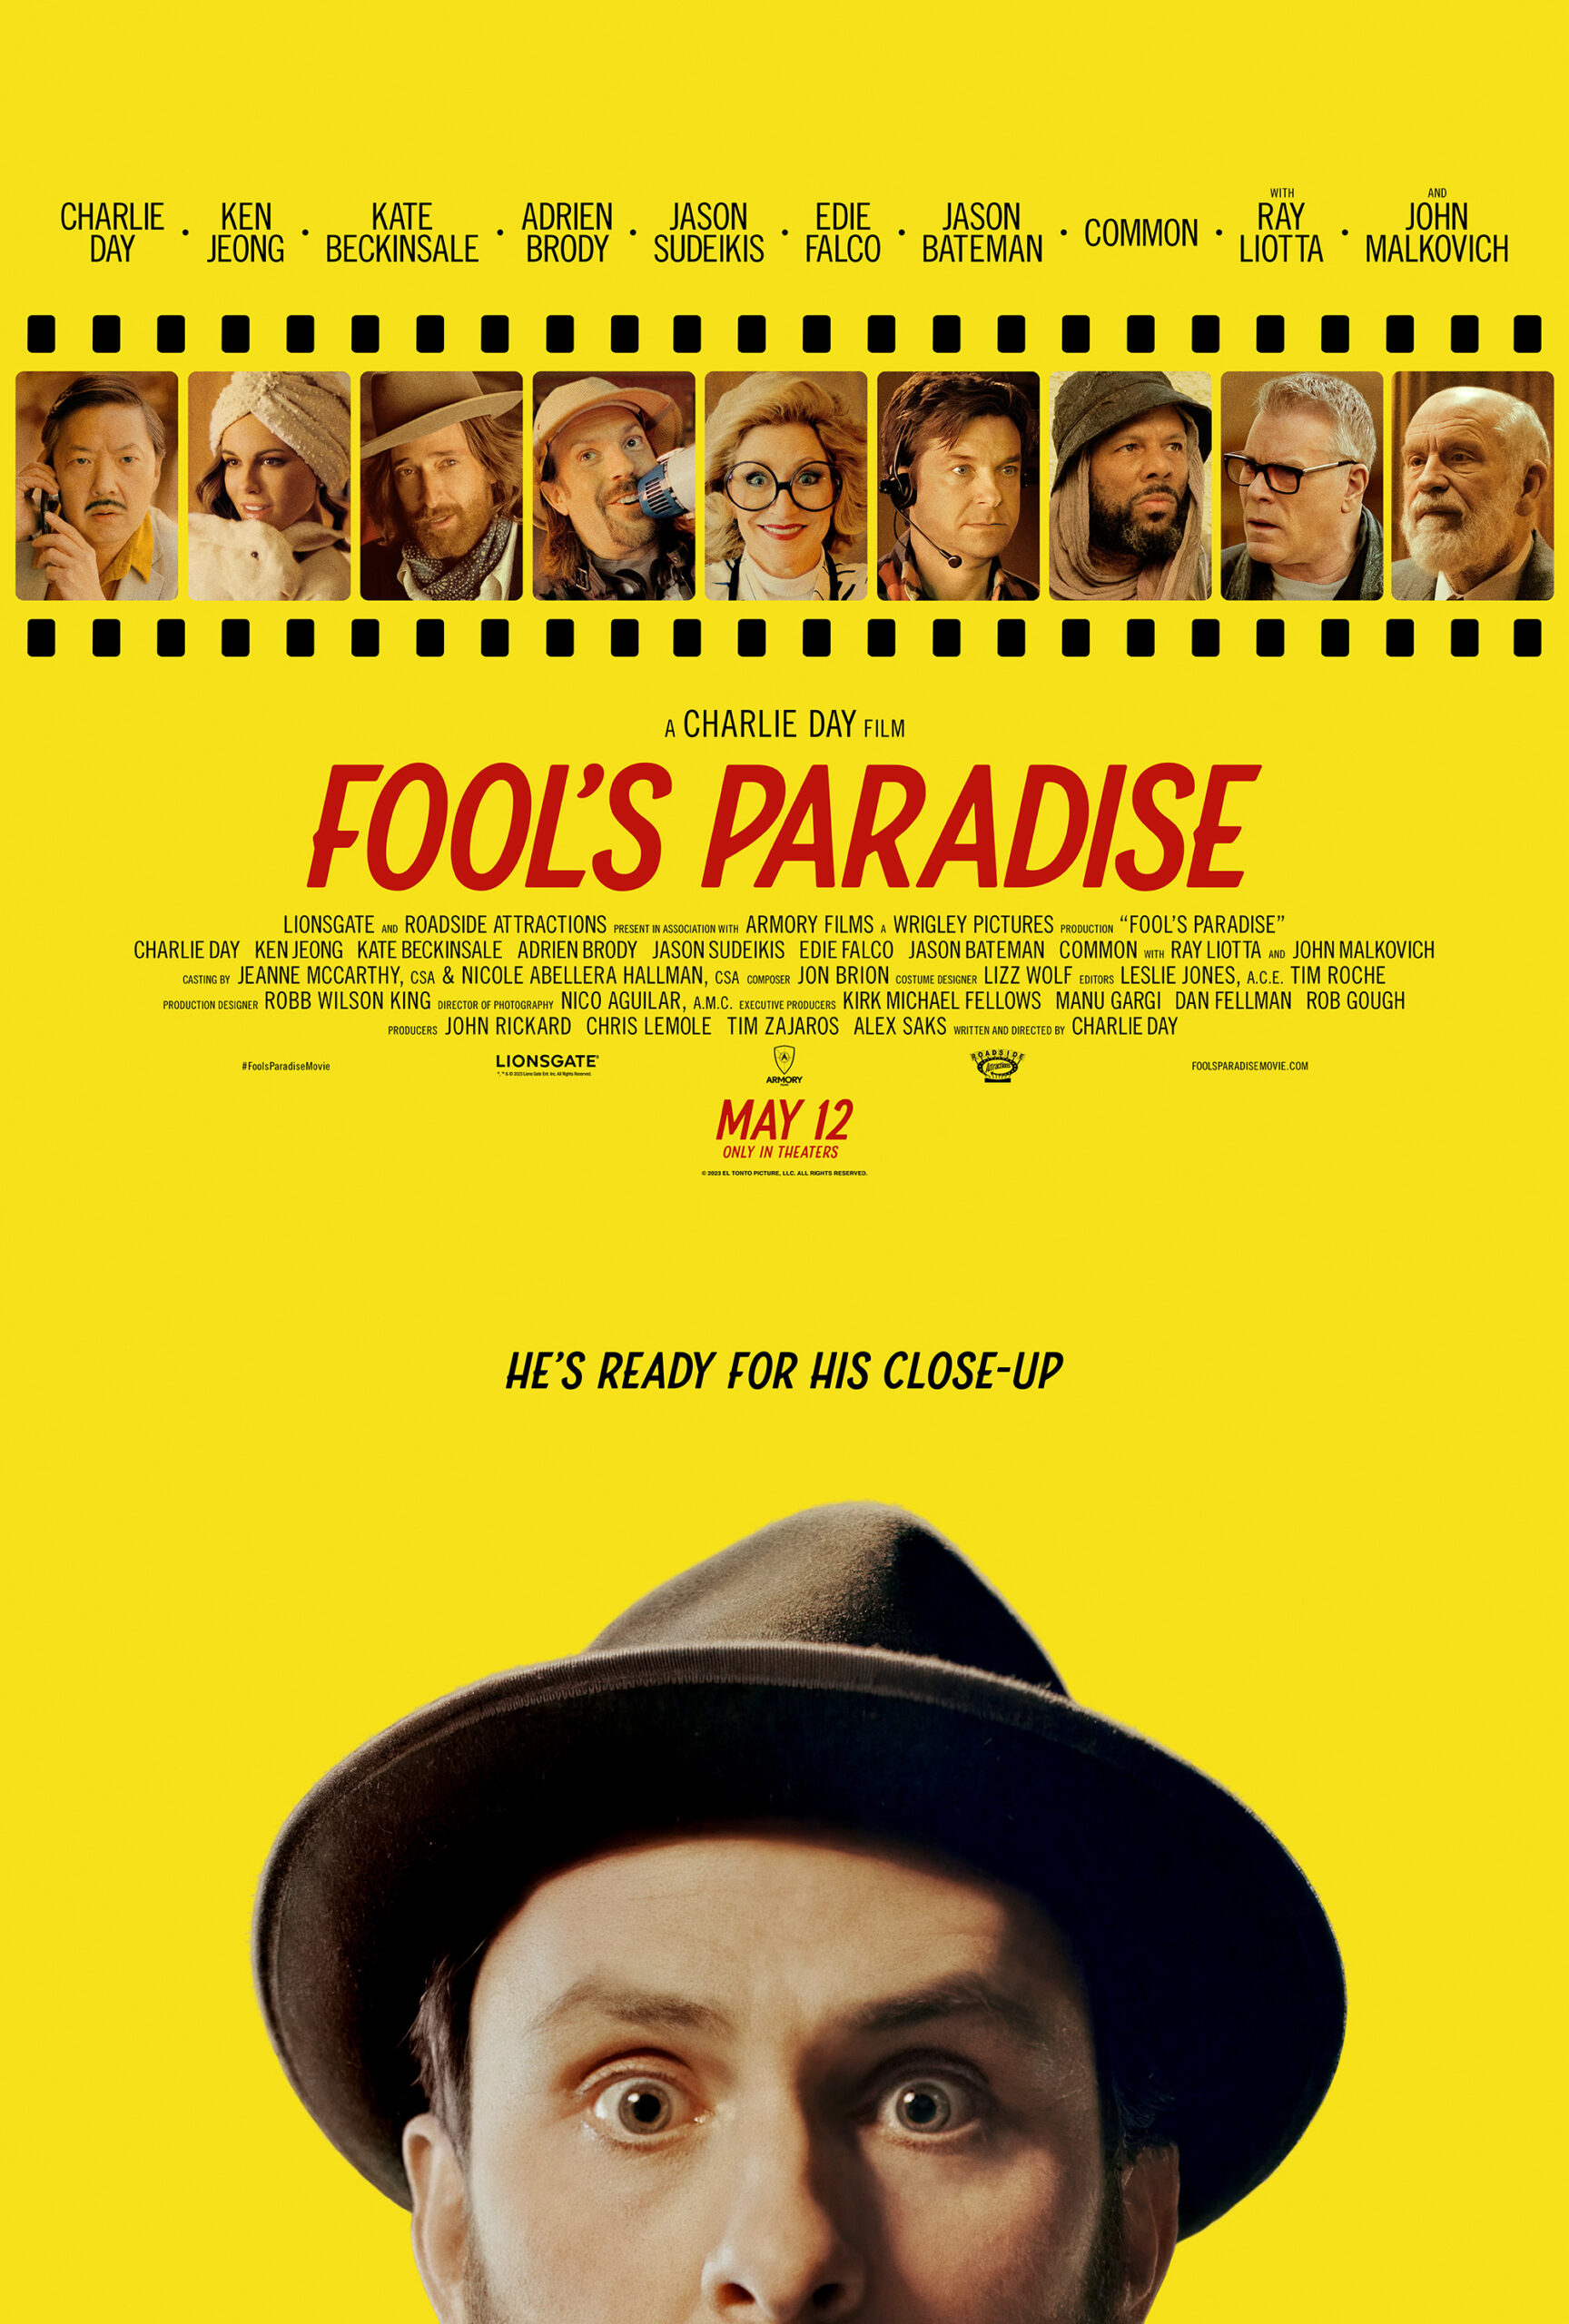 Póster promocional de la película de comedia Fool's Paradise